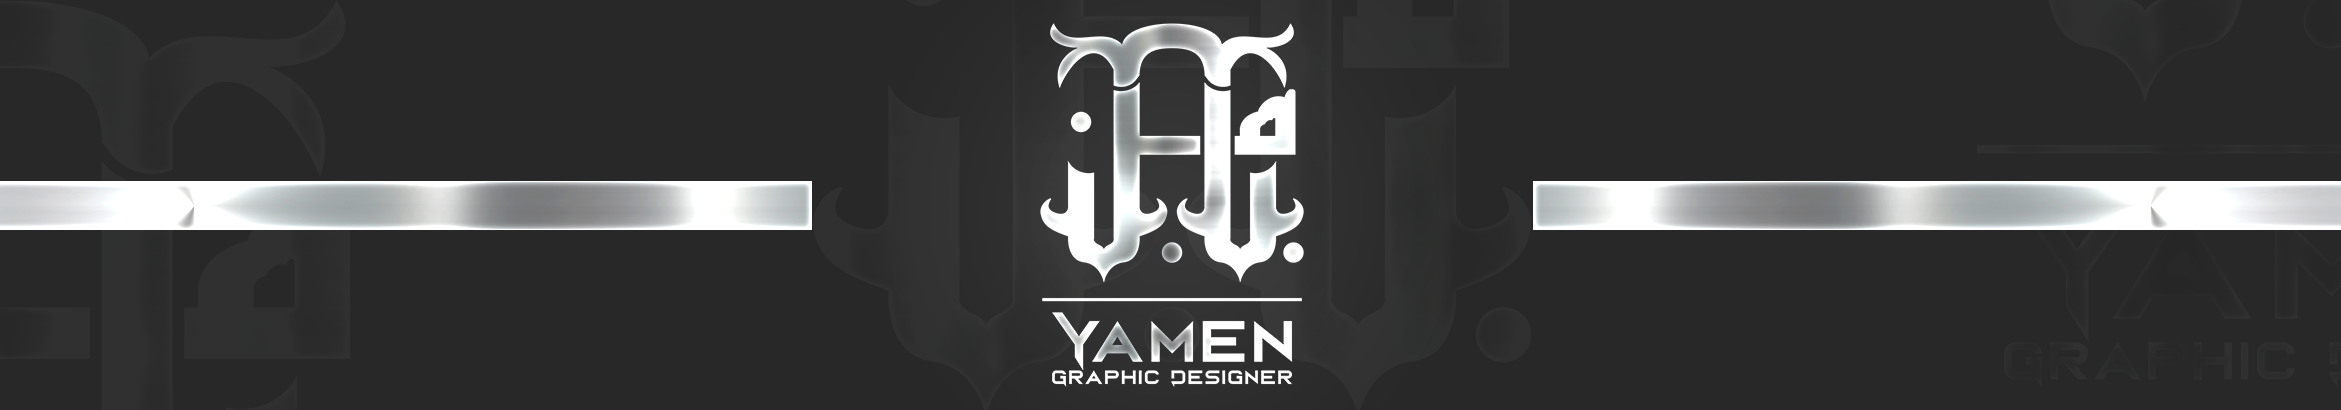 Banner de perfil de Yamen AL-Qadre